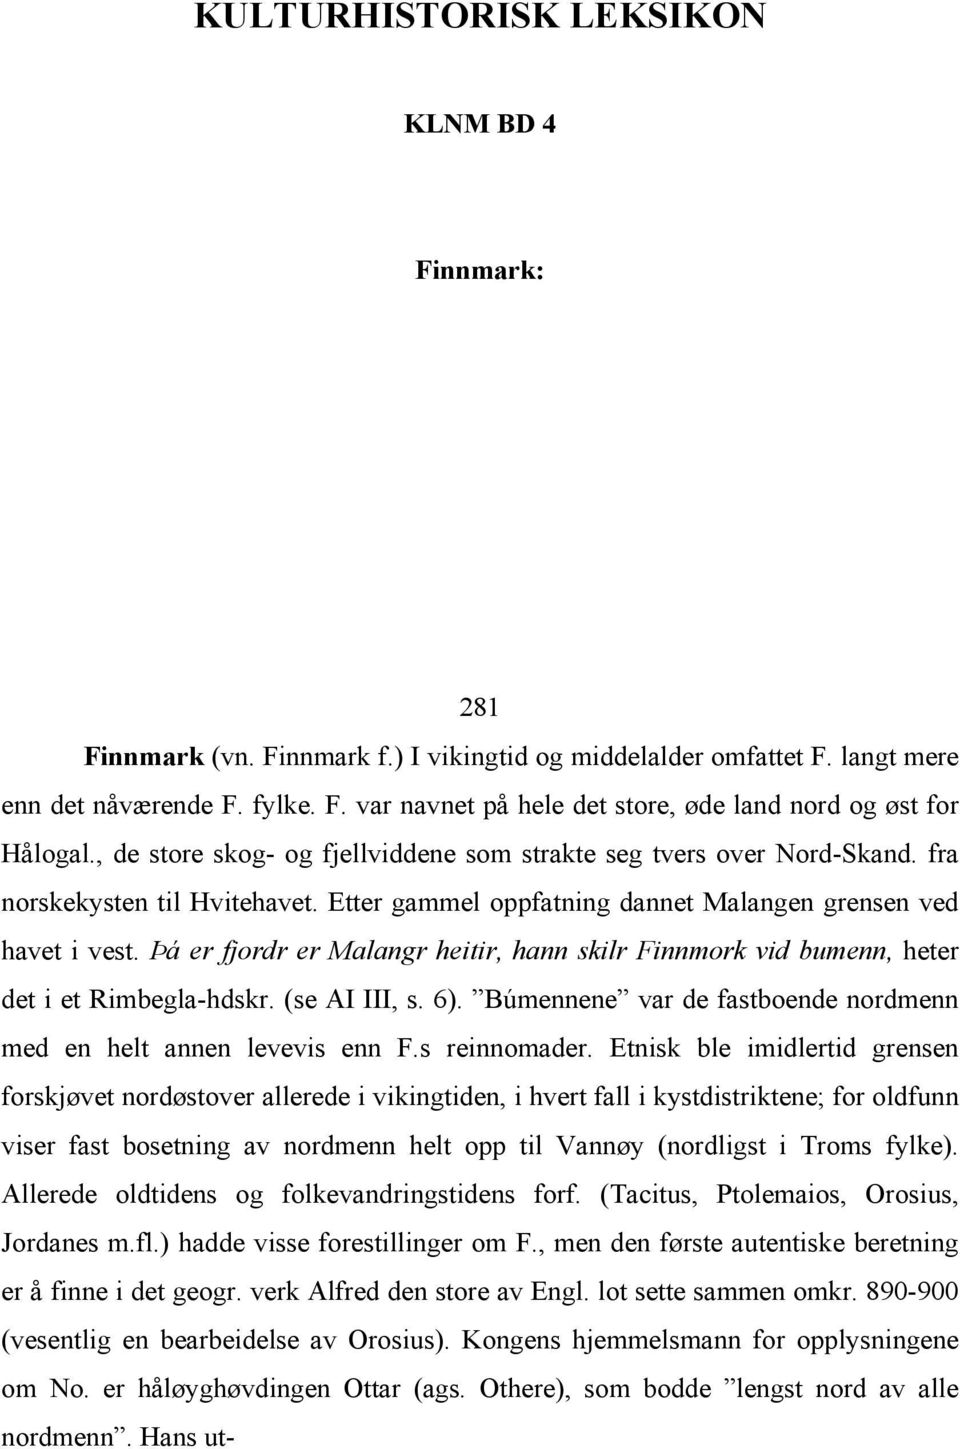 Þá er fjordr er Malangr heitir, hann skilr Finnmork vid bumenn, heter det i et Rimbegla-hdskr. (se AI III, s. 6). Búmennene var de fastboende nordmenn med en helt annen levevis enn F.s reinnomader.